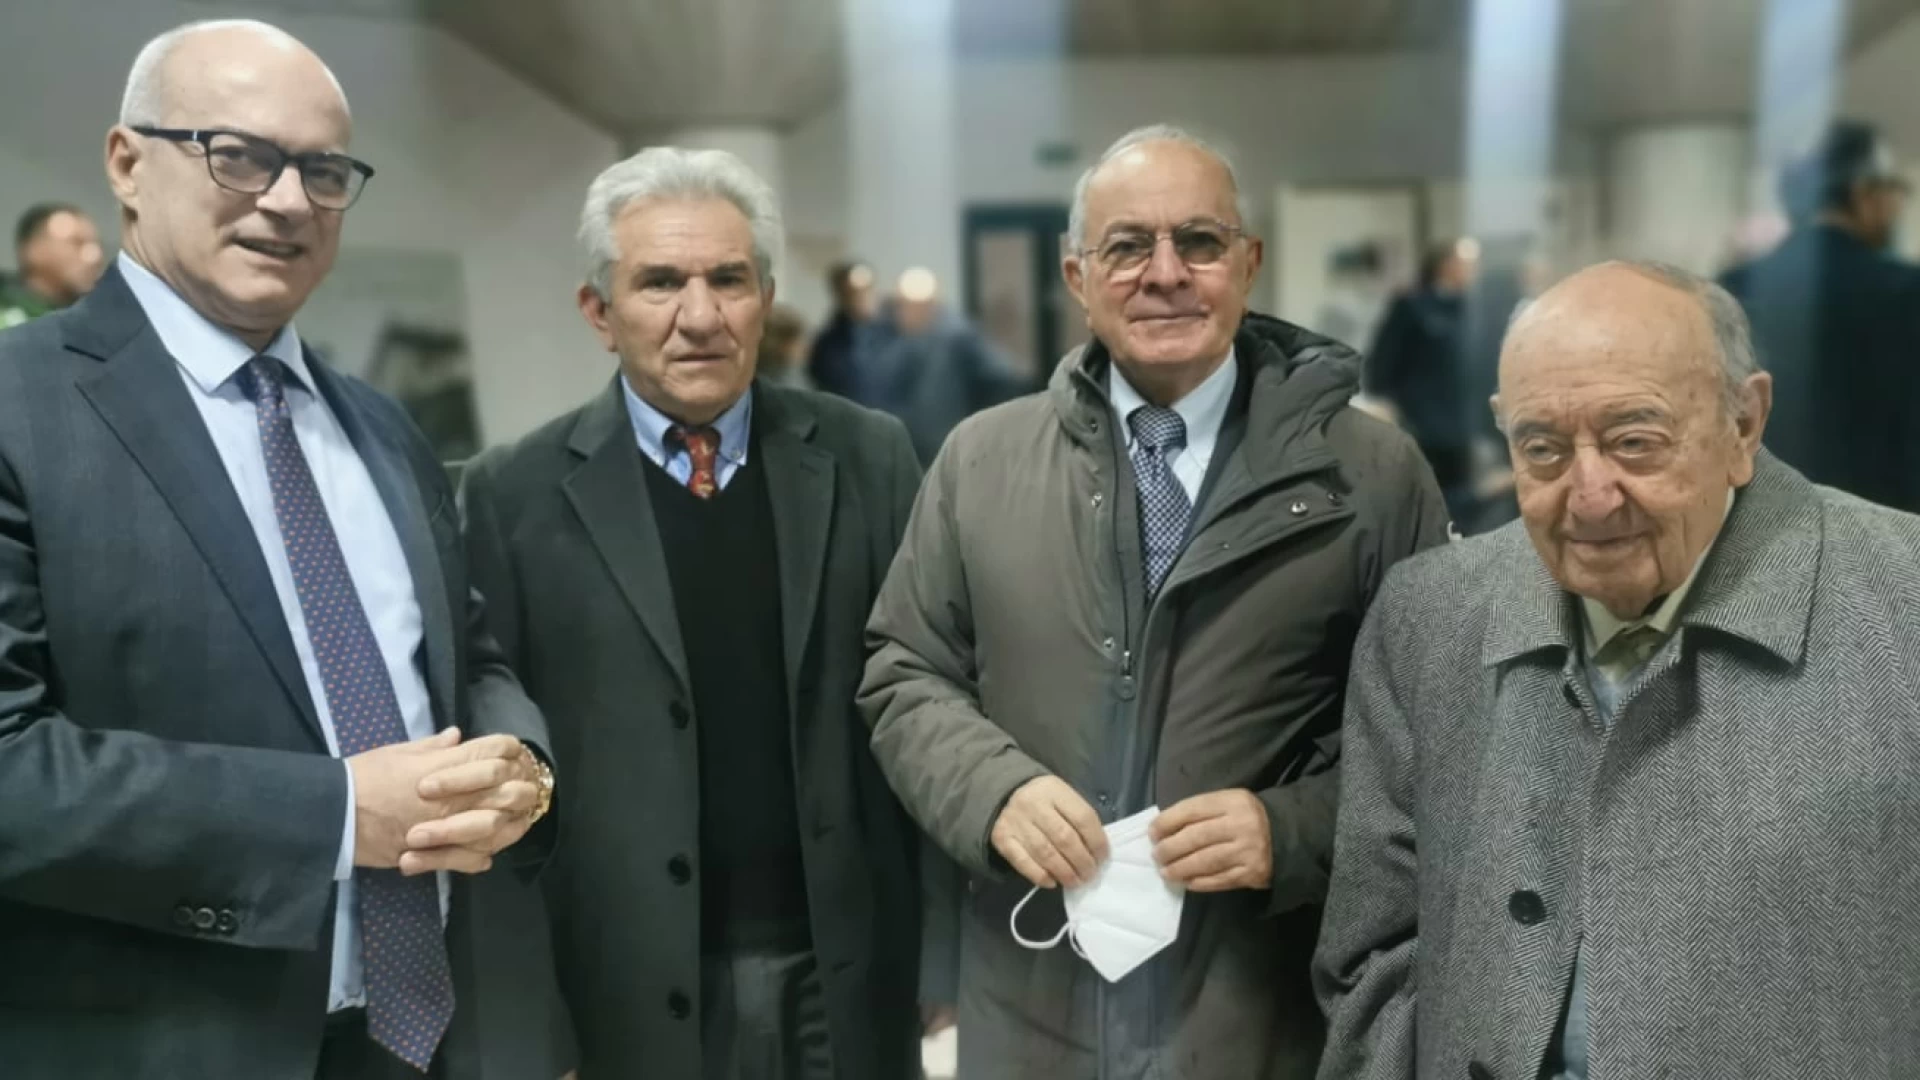 Premio Aquila d’oro, Toma: “I Professori Emilio Gentile e Michele Campanella benemeriti della cultura molisana”